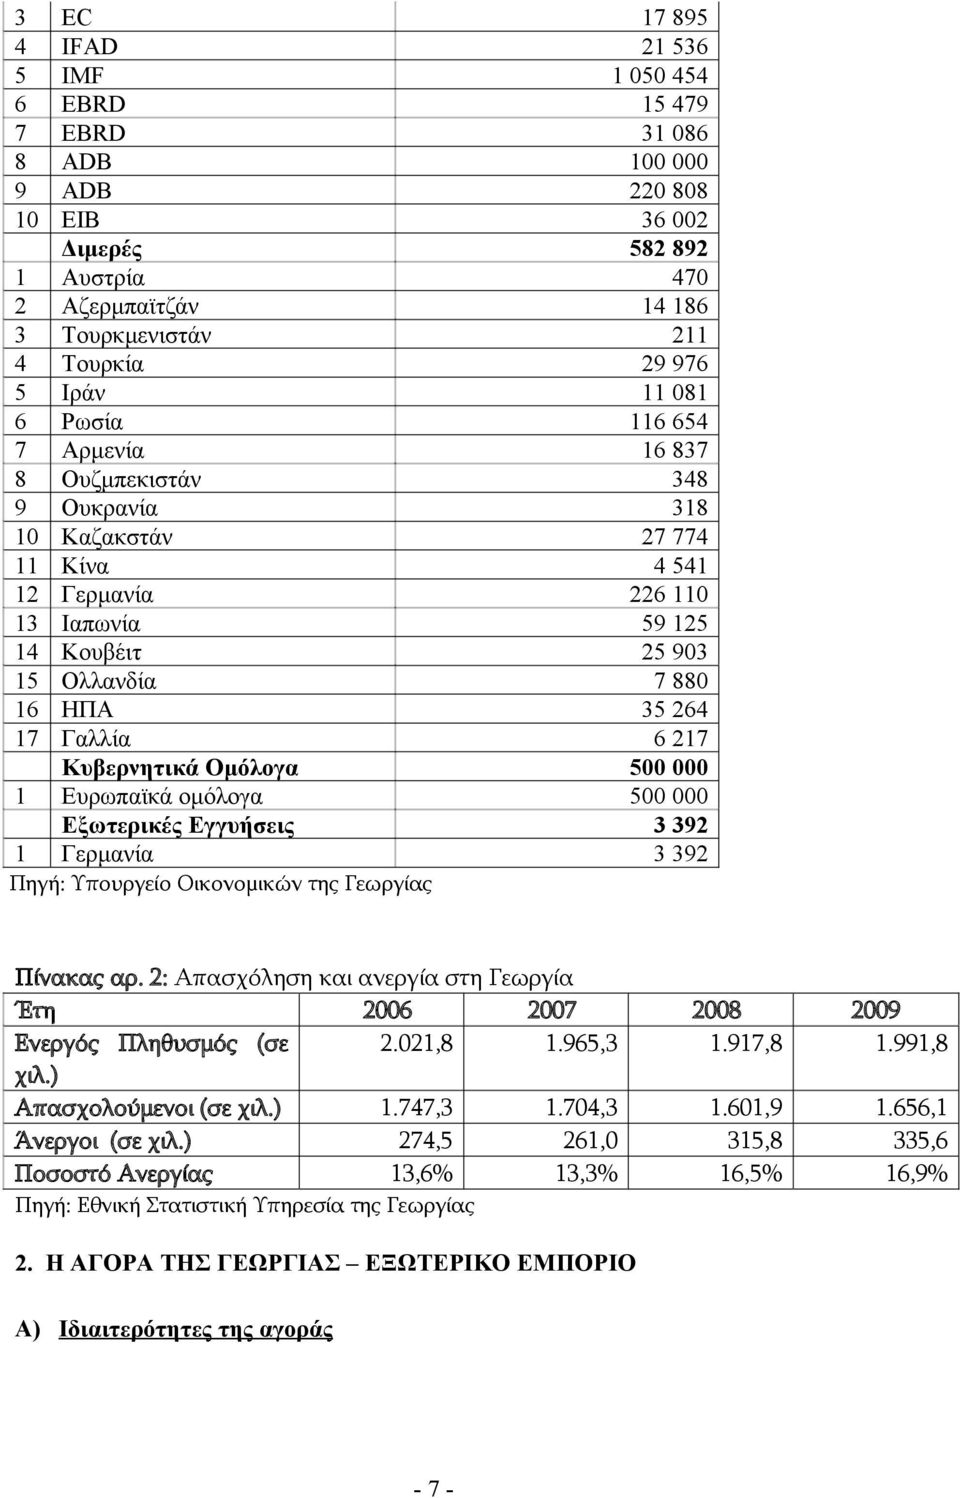 35 264 17 Γαλλία 6 217 Κυβερνητικά Ομόλογα 500 000 1 Ευρωπαϊκά ομόλογα 500 000 Εξωτερικές Εγγυήσεις 3 392 1 Γερμανία 3 392 Πηγή: Υπουργείο Οικονομικών της Γεωργίας Πίνακας αρ.